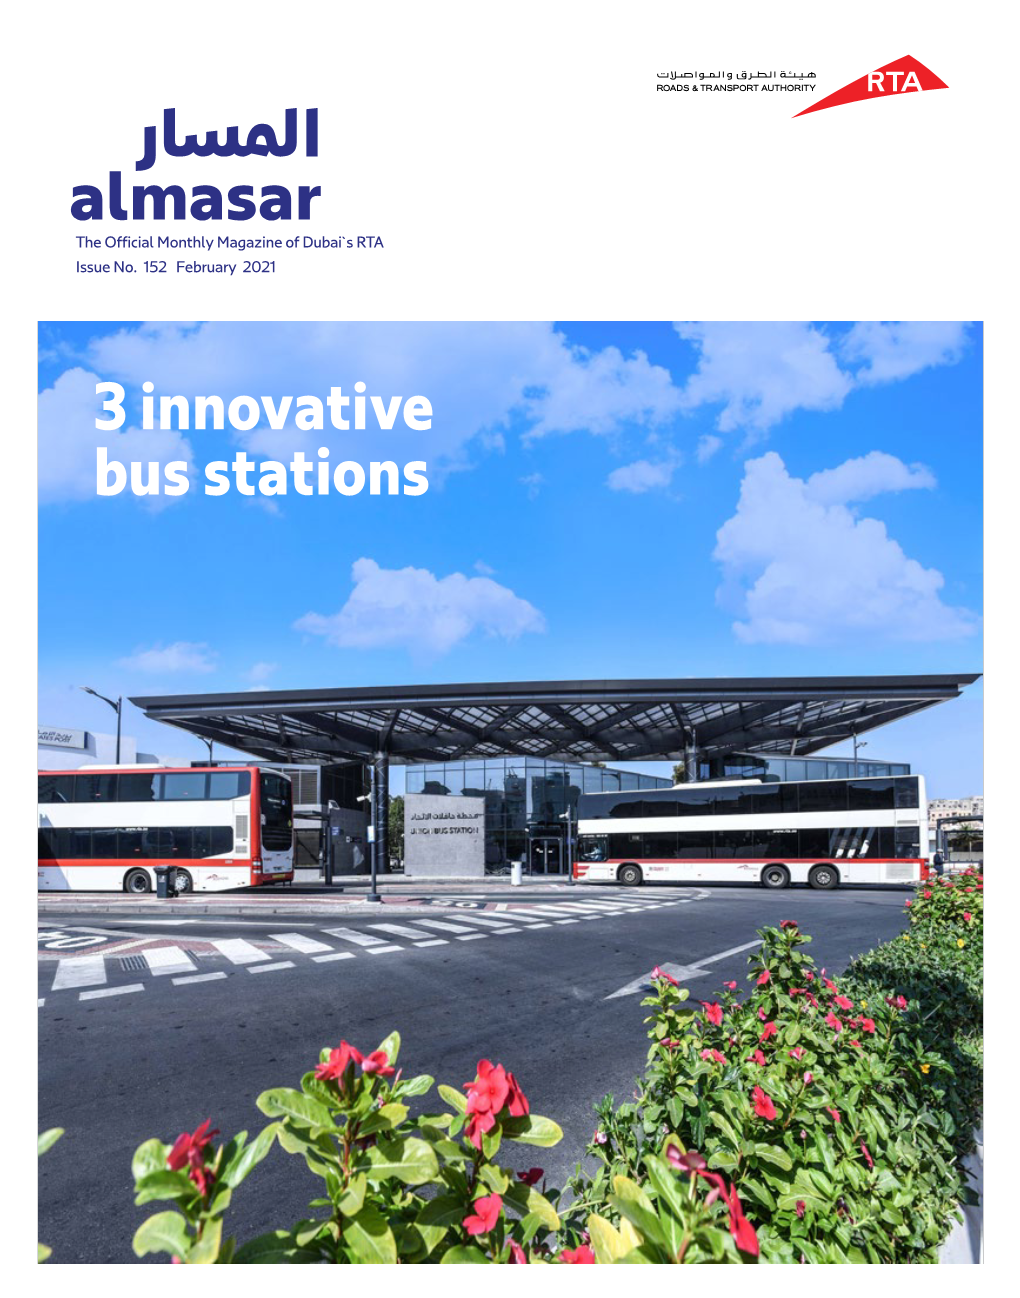 Read More About Al Masar Magazine